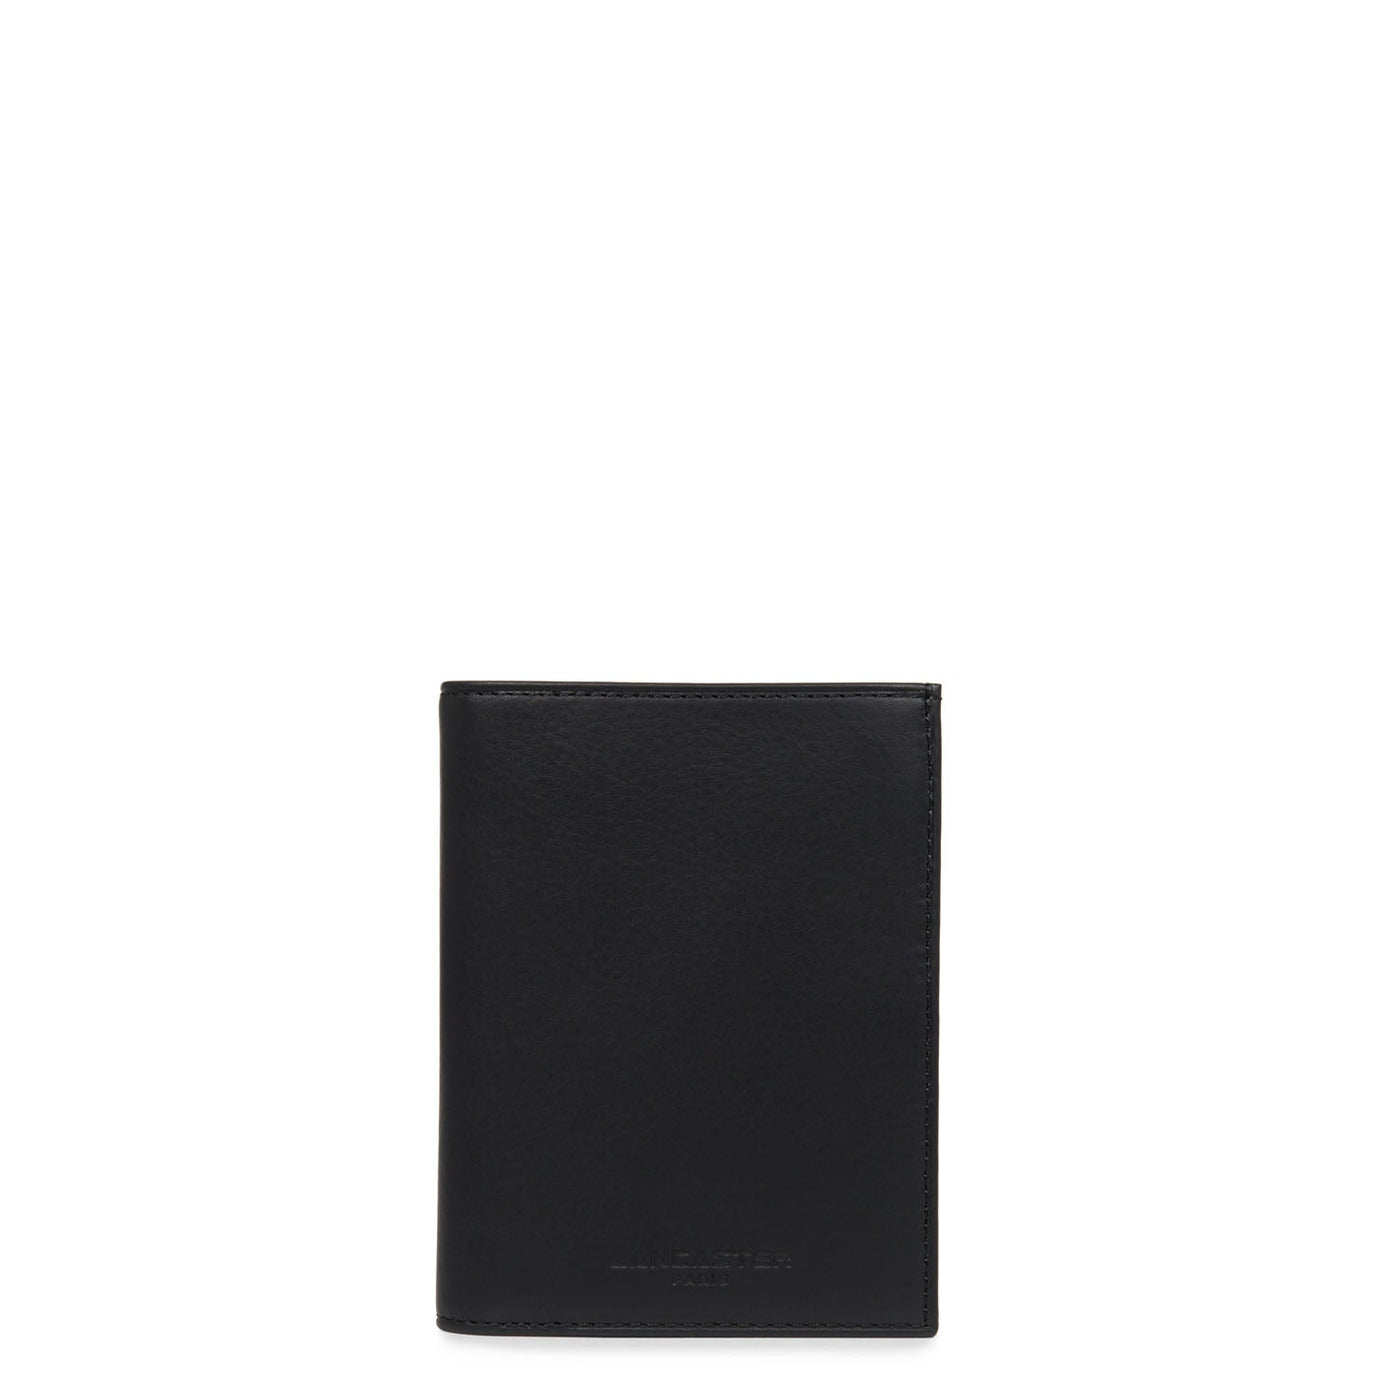 m wallet - soft vintage homme #couleur_noir